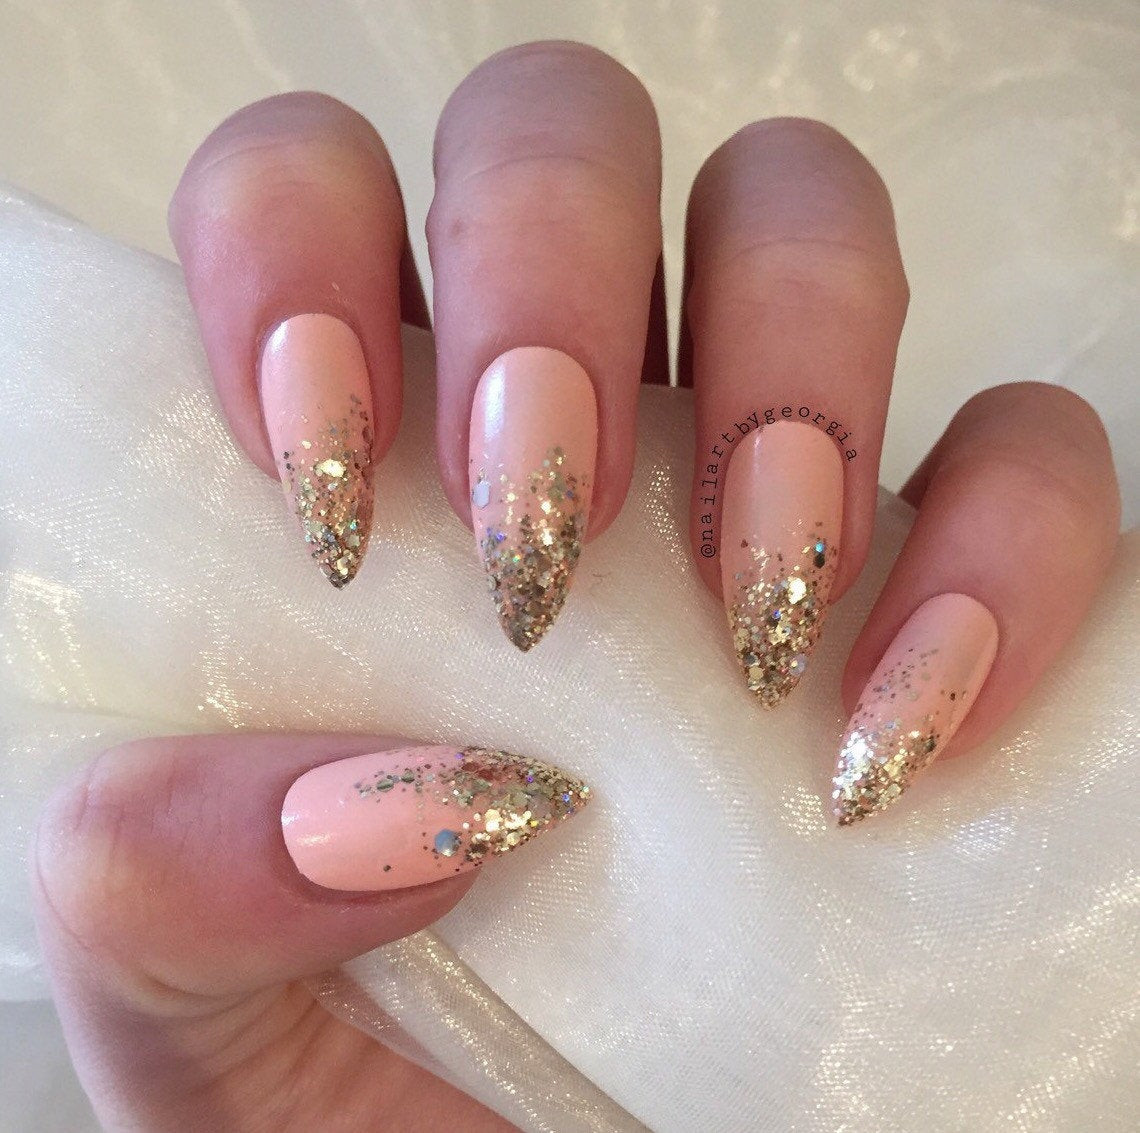 Gold Glitter Ombre Nails
 Peach stiletto false nails with gold glitter ombre